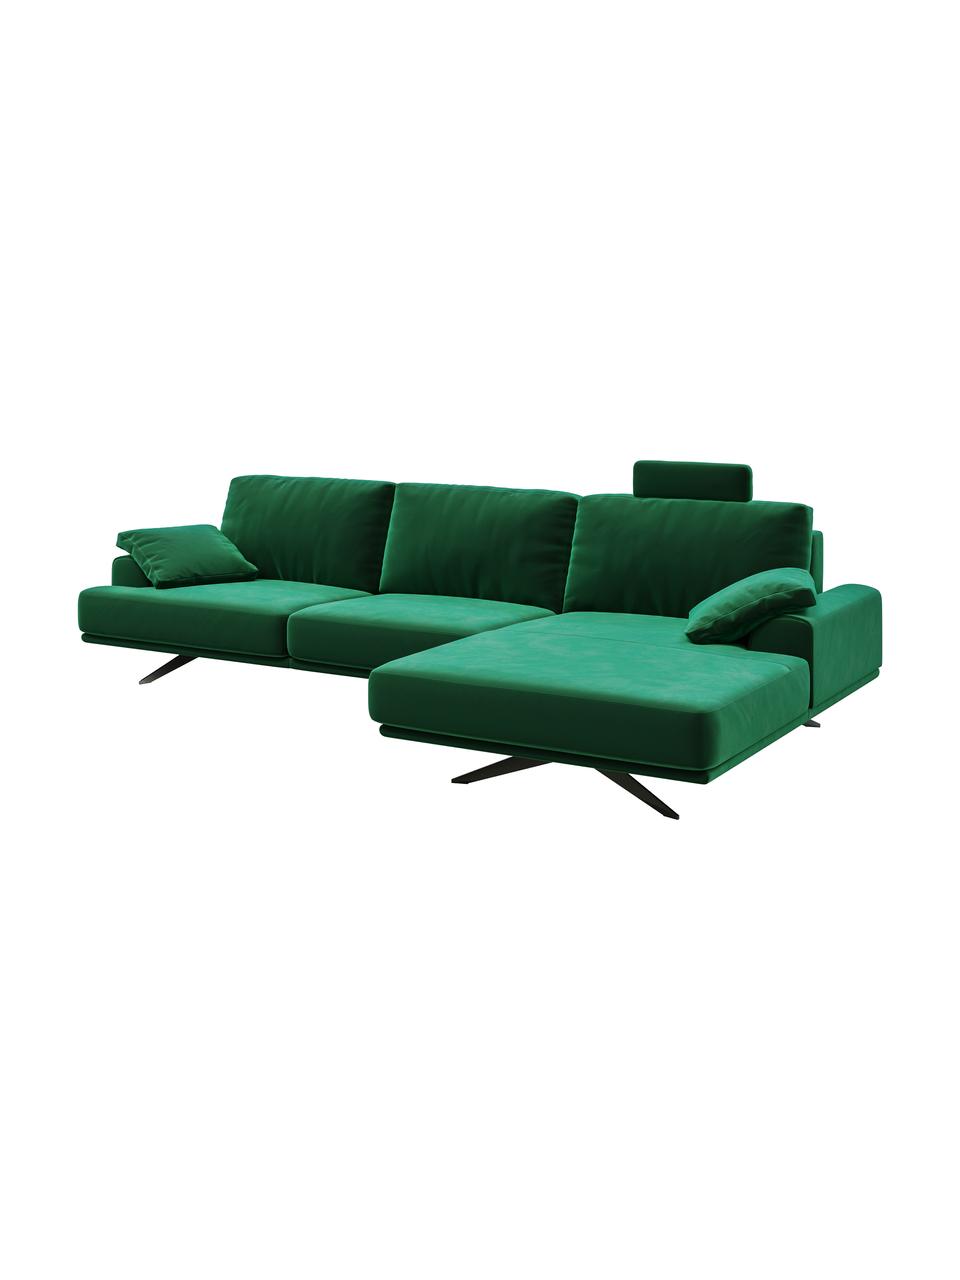 Sofa narożna z aksamitu Prado, Tapicerka: 100% aksamit poliestrowy,, Nogi: metal lakierowany, Ciemny zielony, S 315 x G 180 cm